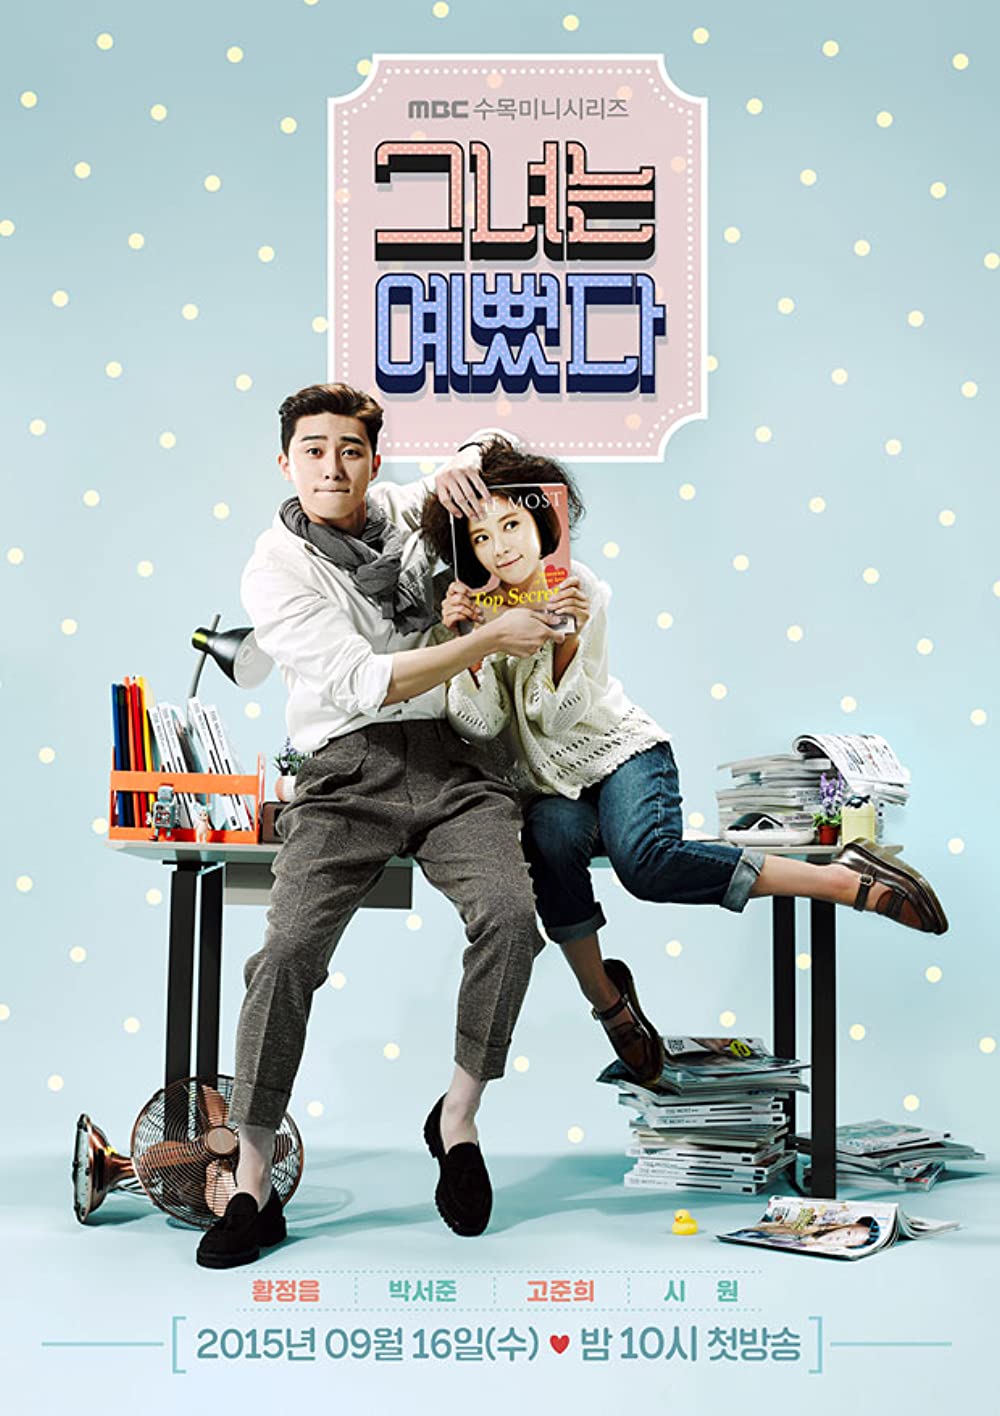 11 Rekomendasi drama Korea komedi, kisah romantis hingga aksi